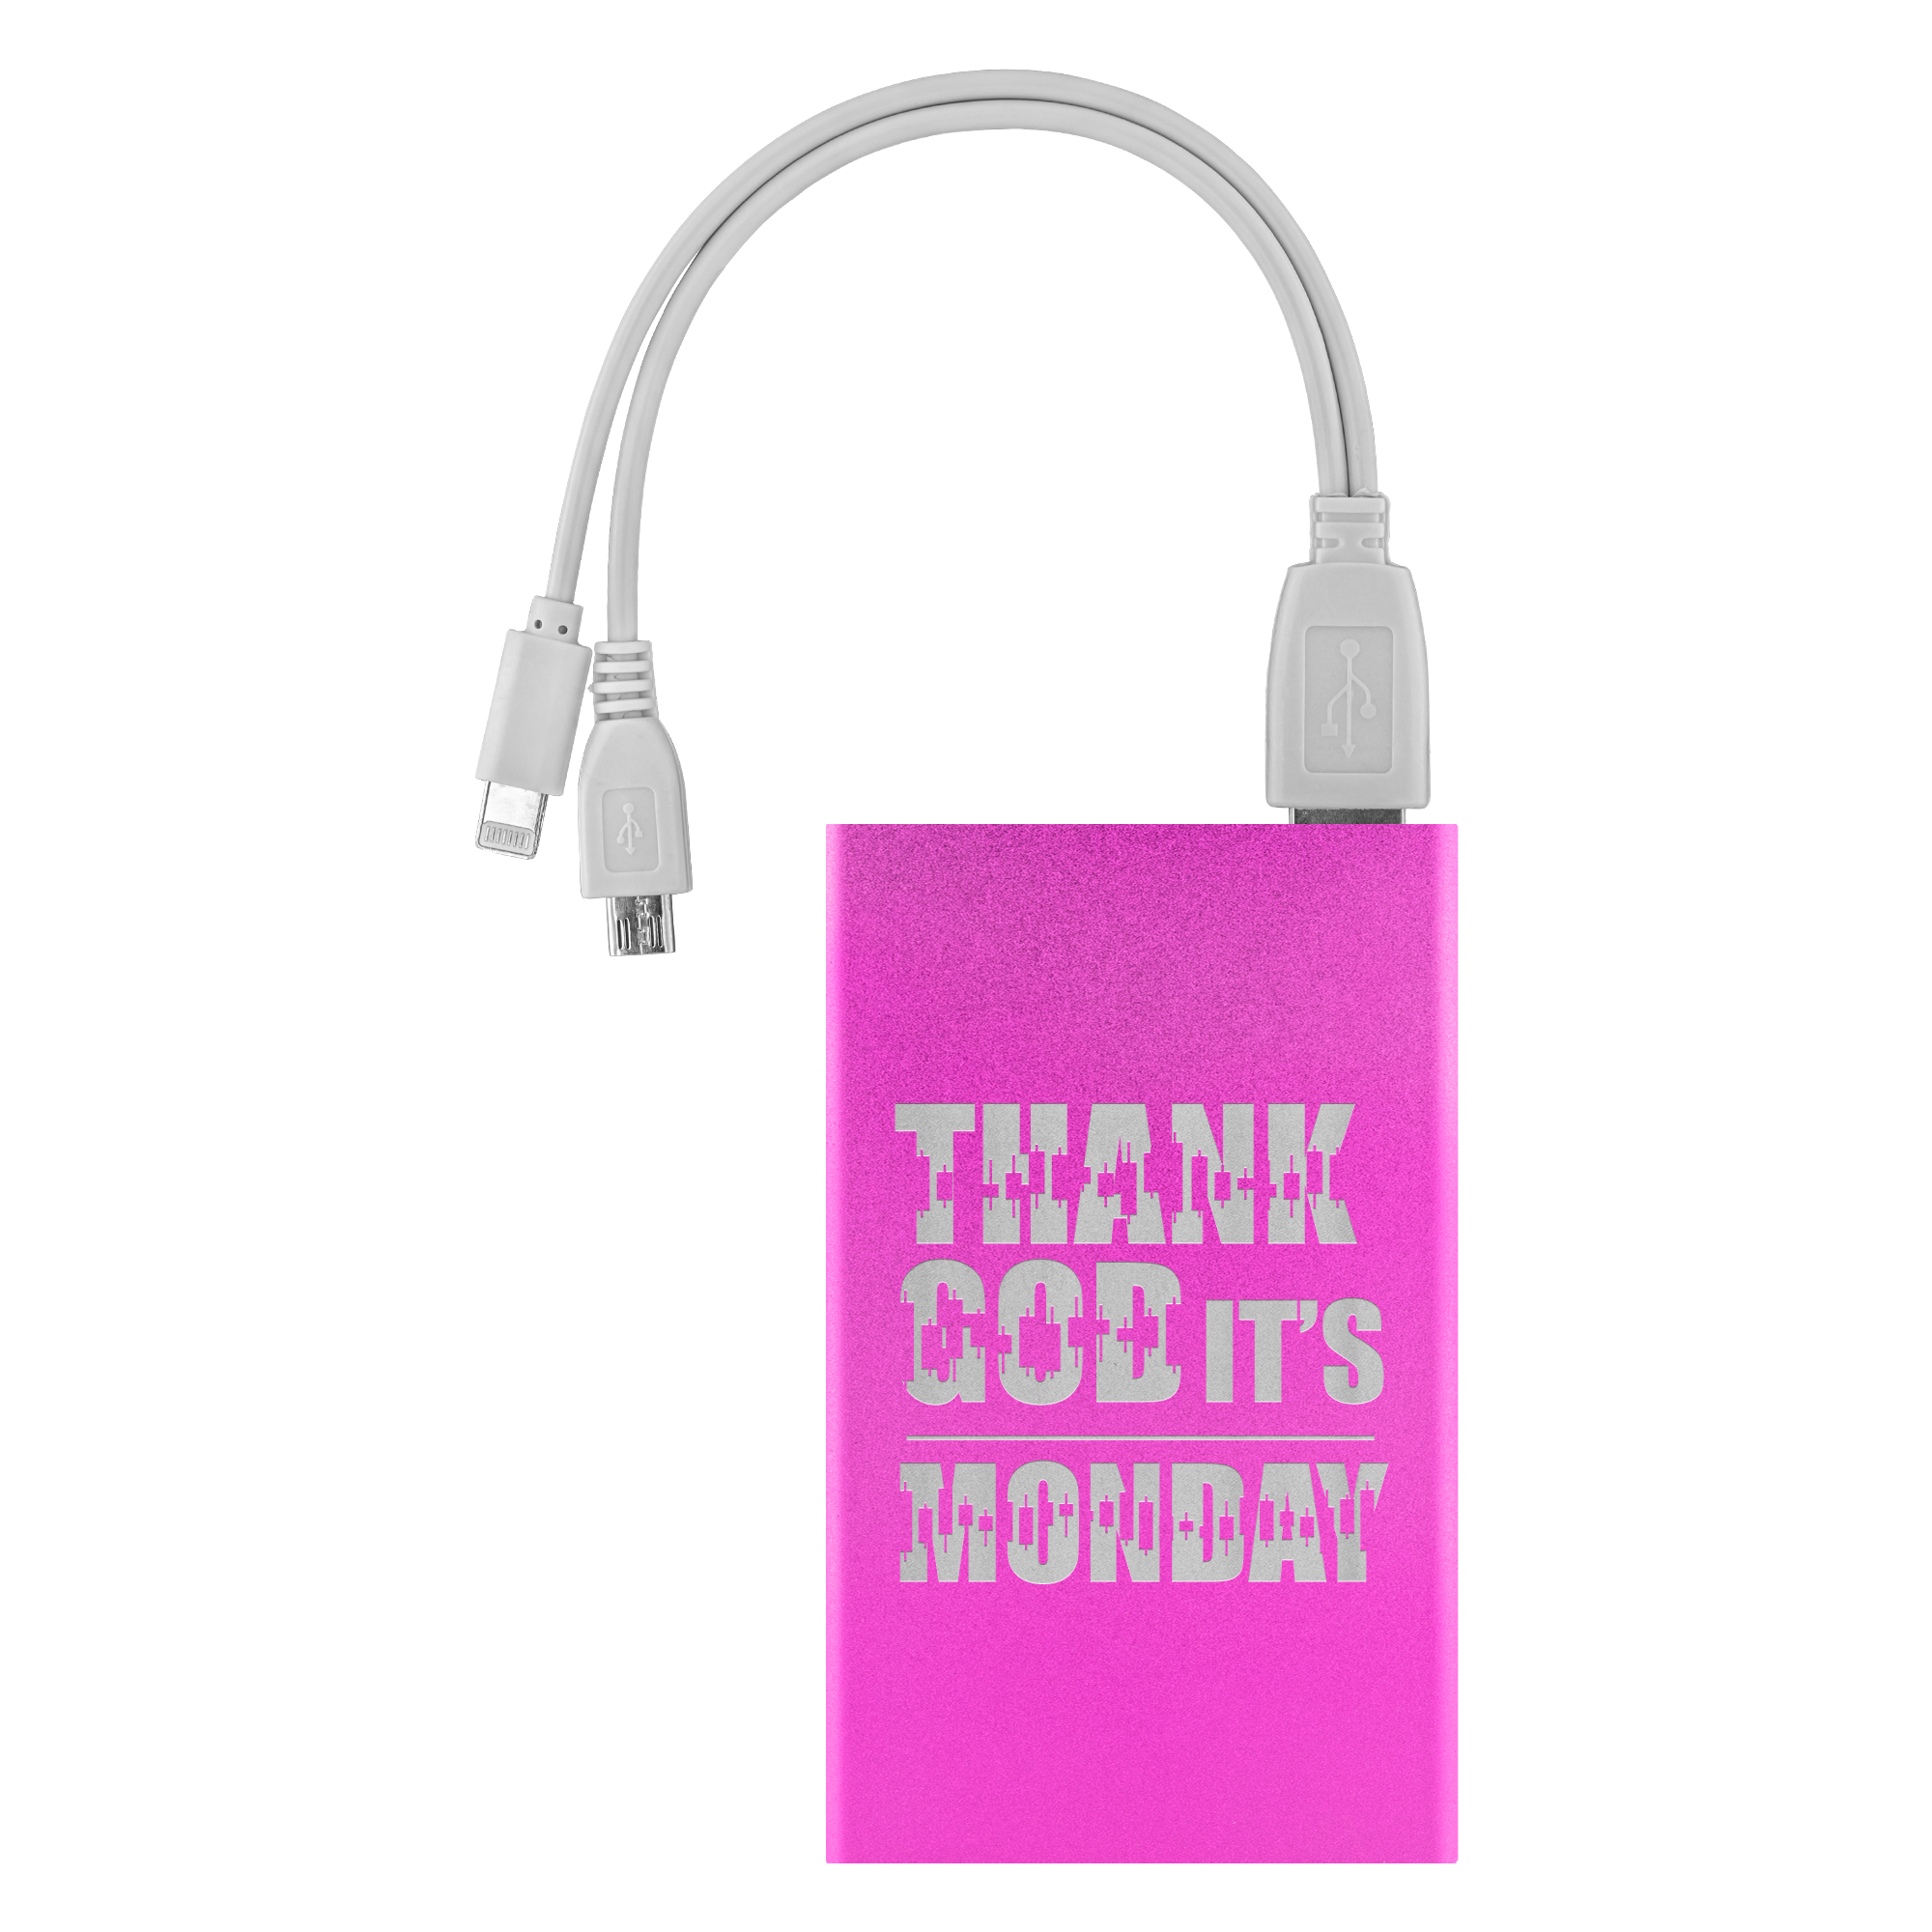 Comprar rosa Power Banks - Gracias a Dios es lunes